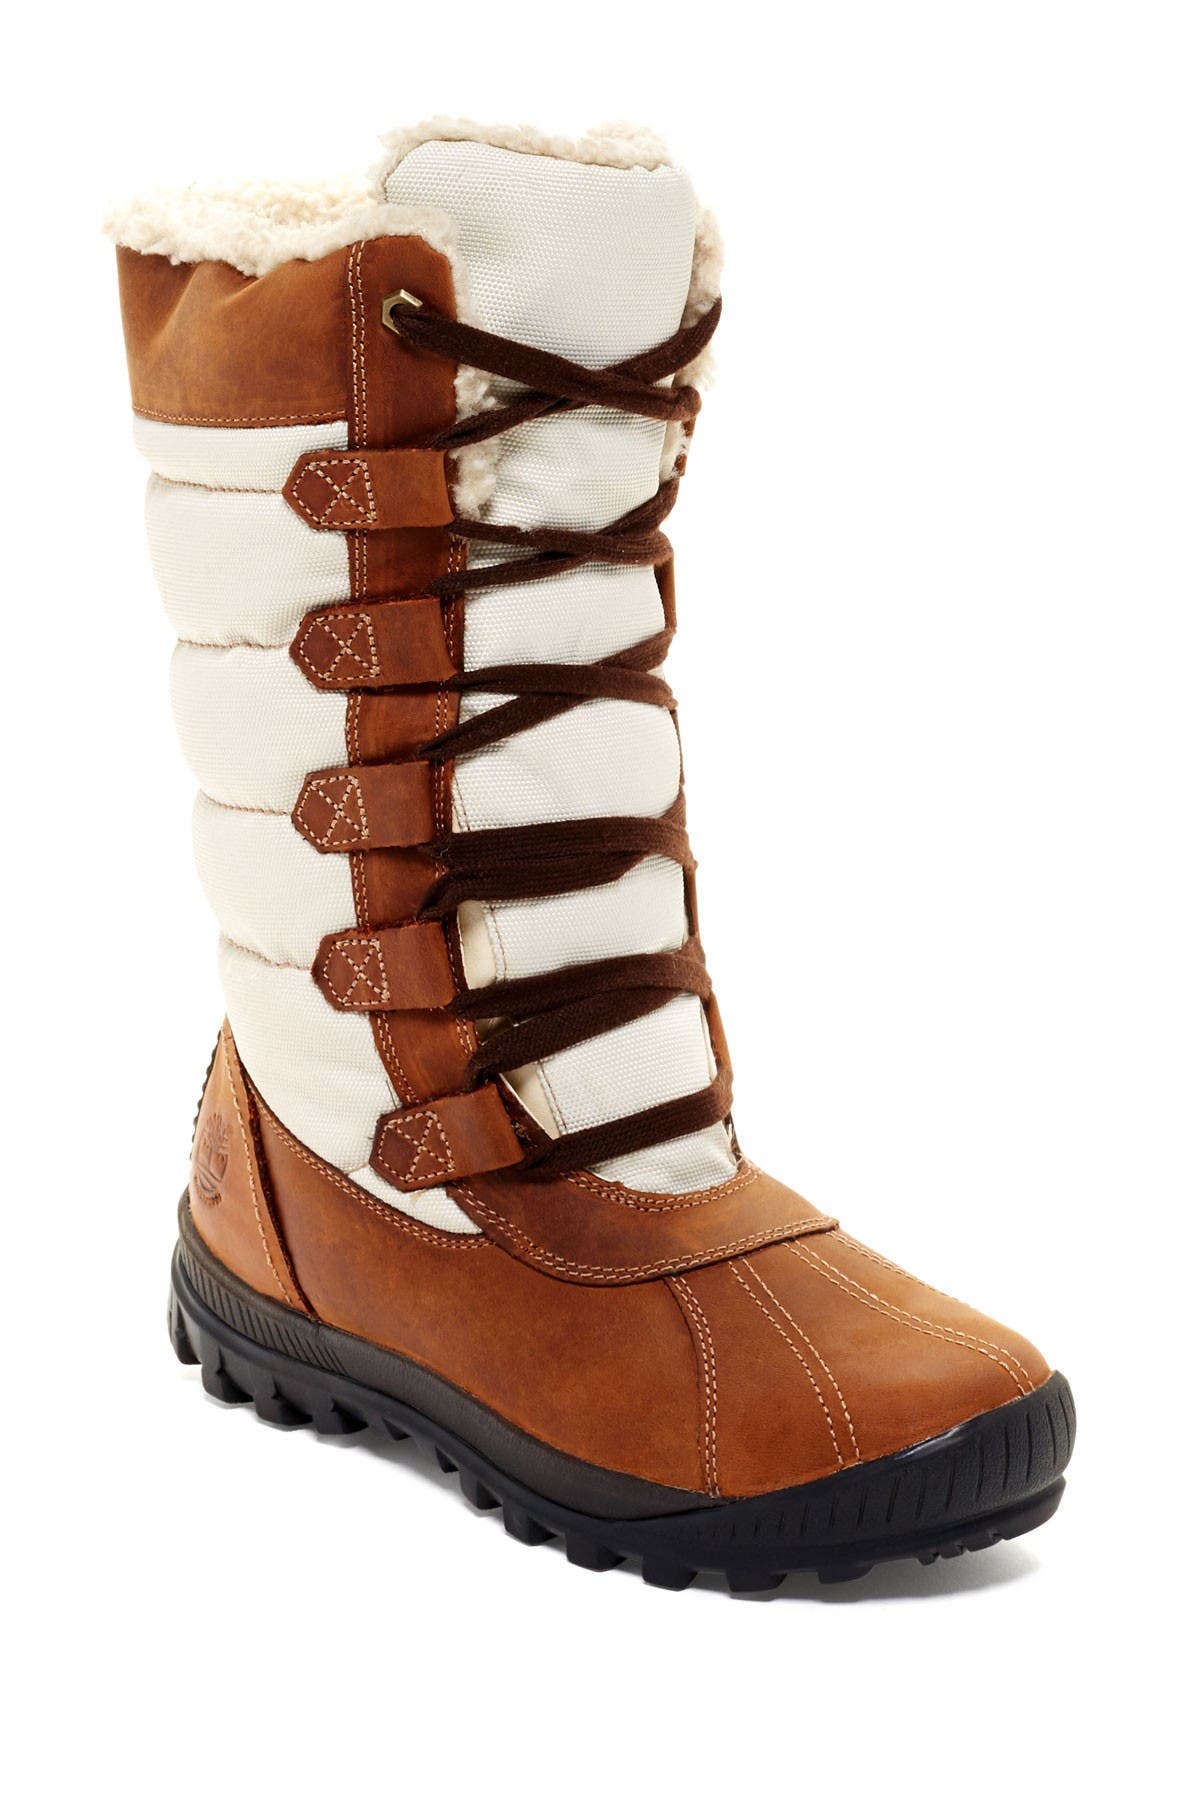 women's winter boots nordstrom rack